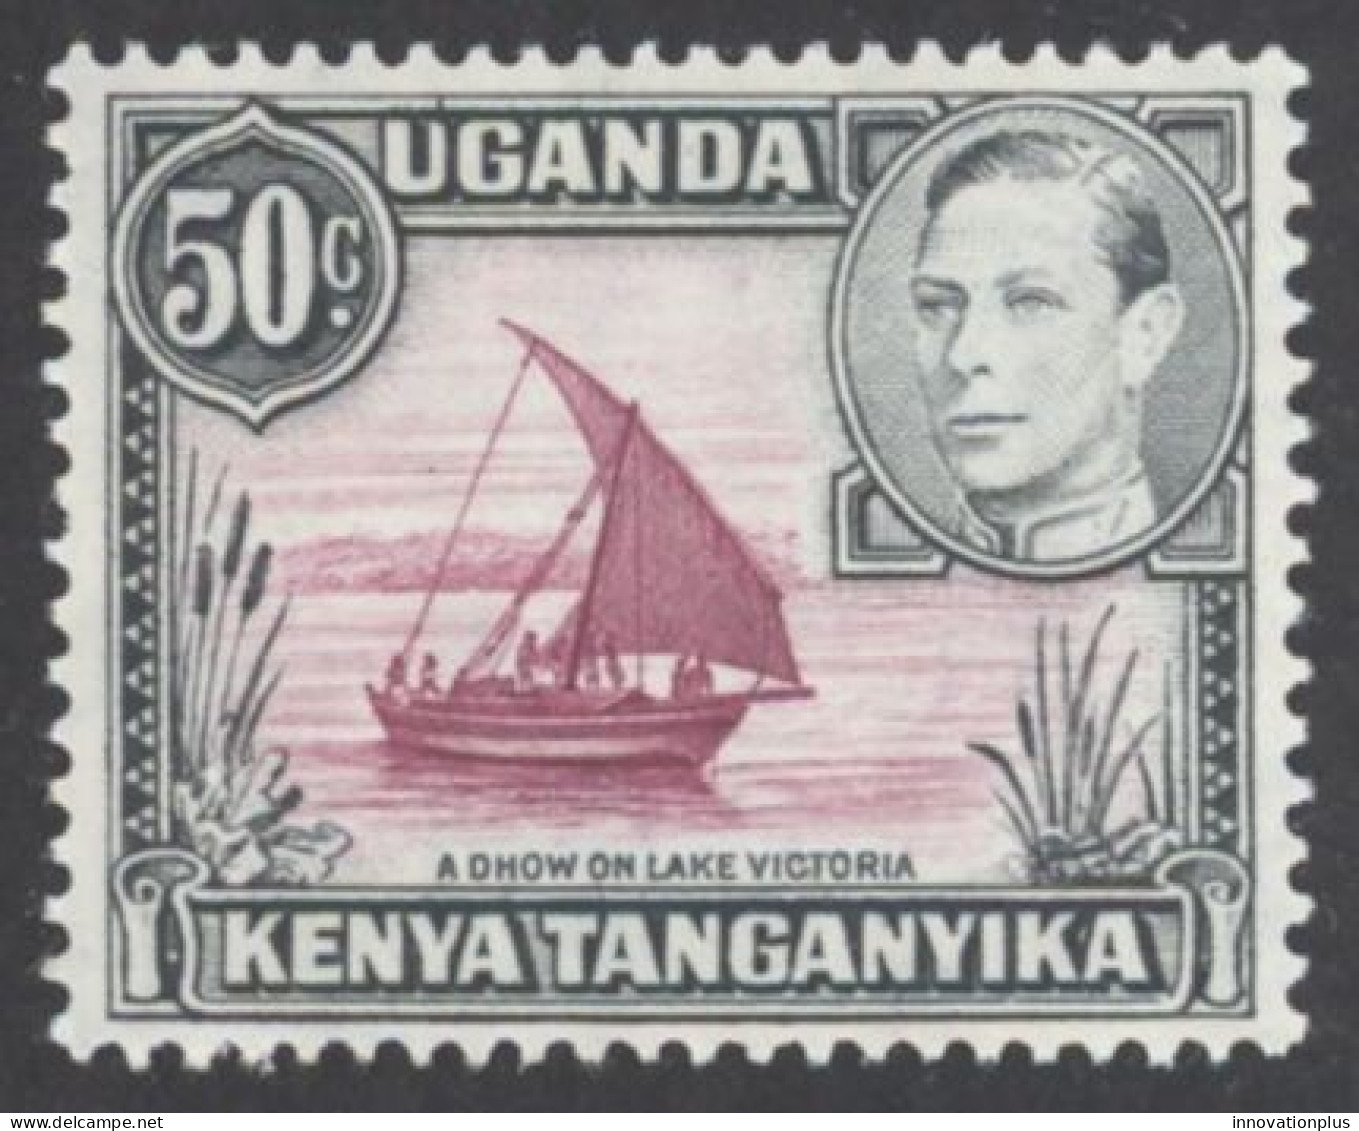 Kenya, Uganda, Tanzania Sc# 79 MH Perf 13X12½  1949 50c Definitives - Kenya, Uganda & Tanzania